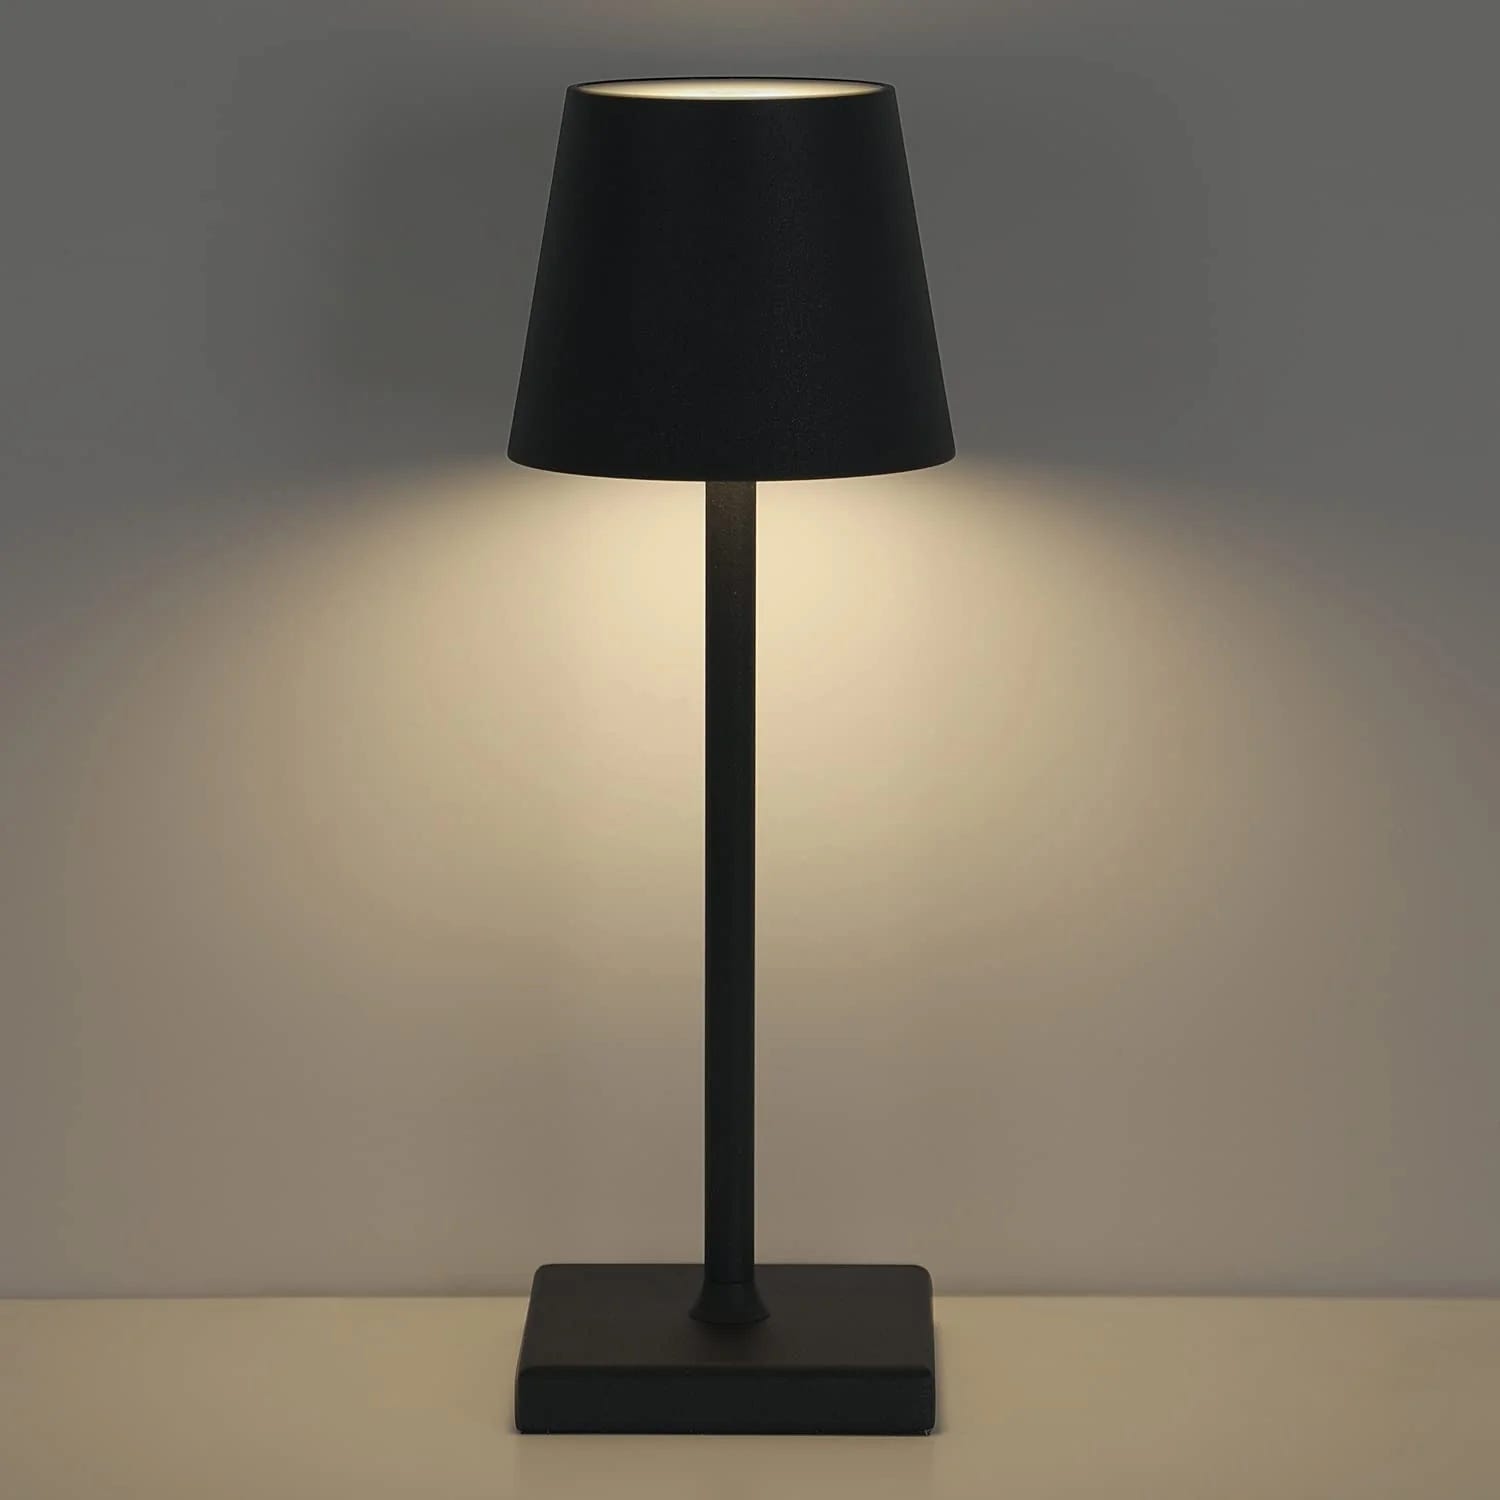 Lampe Sans Fil - Livraison Gratuite Pour Les Nouveaux Utilisateurs